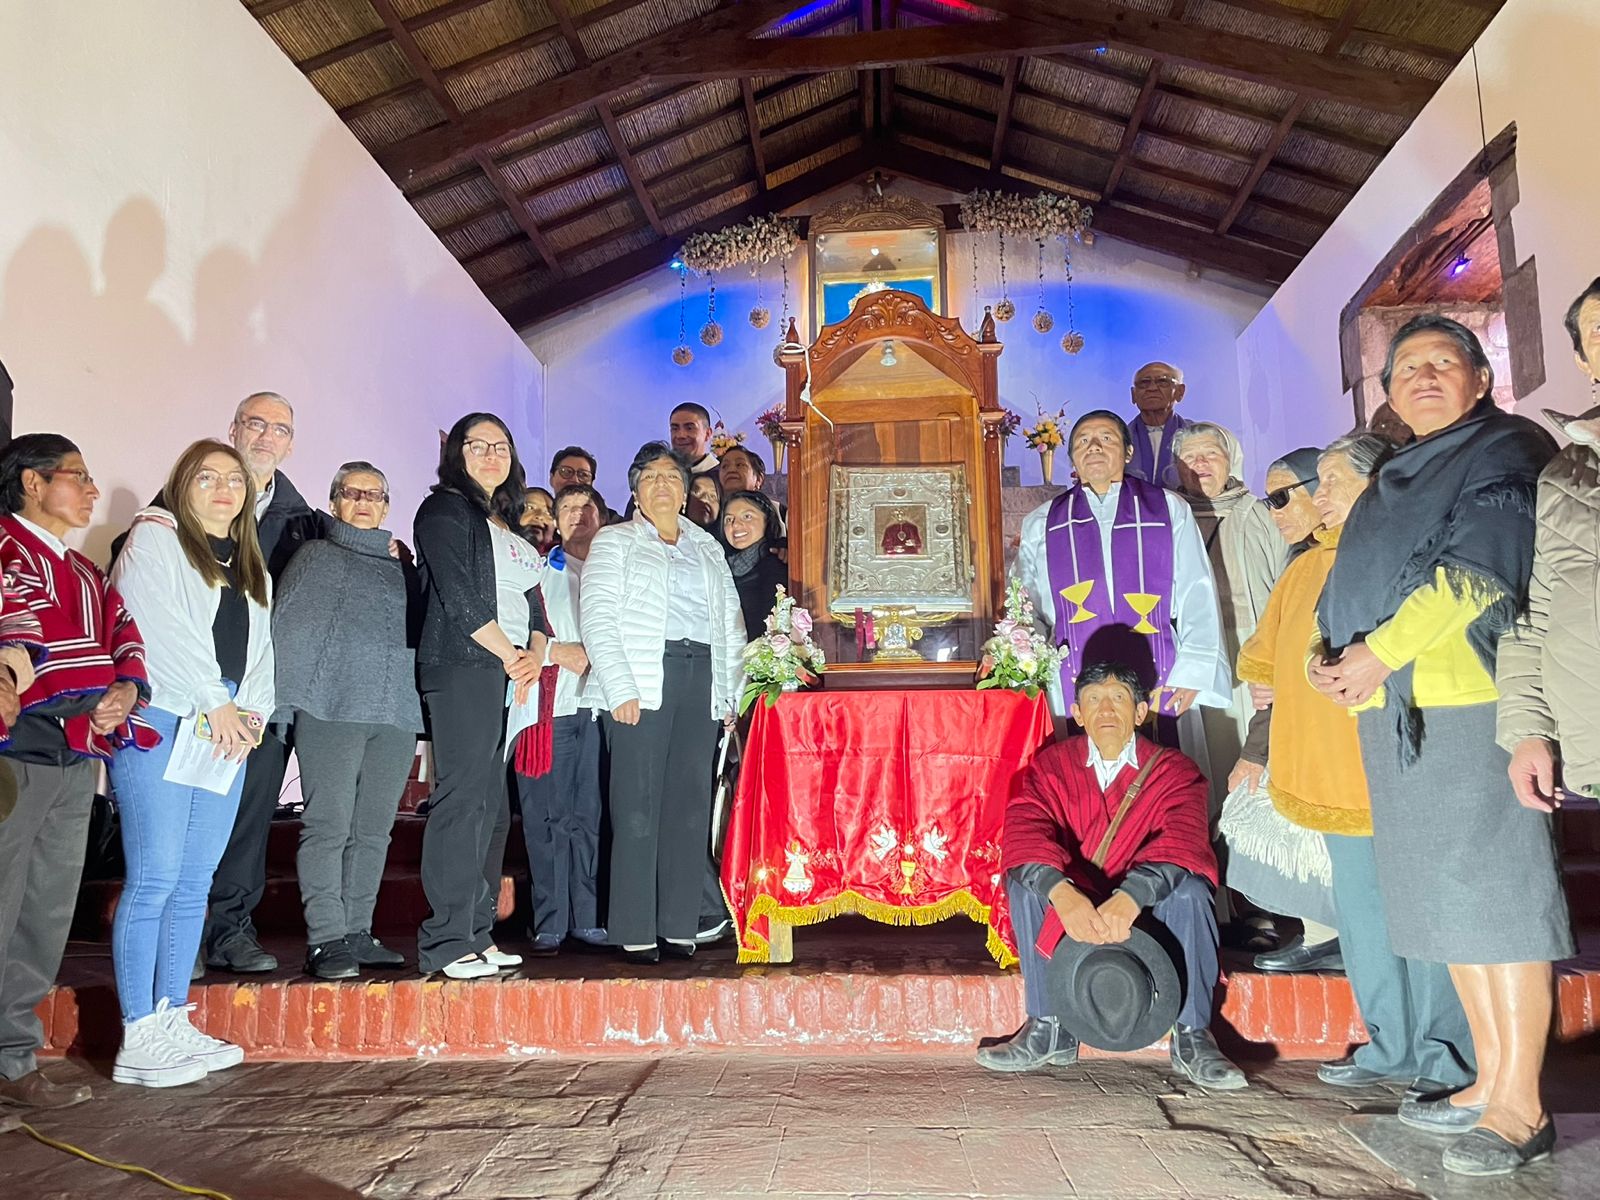 El Evangeliario culminó su recorrido por Riobamba en un ambiente de celebración y agradecimiento